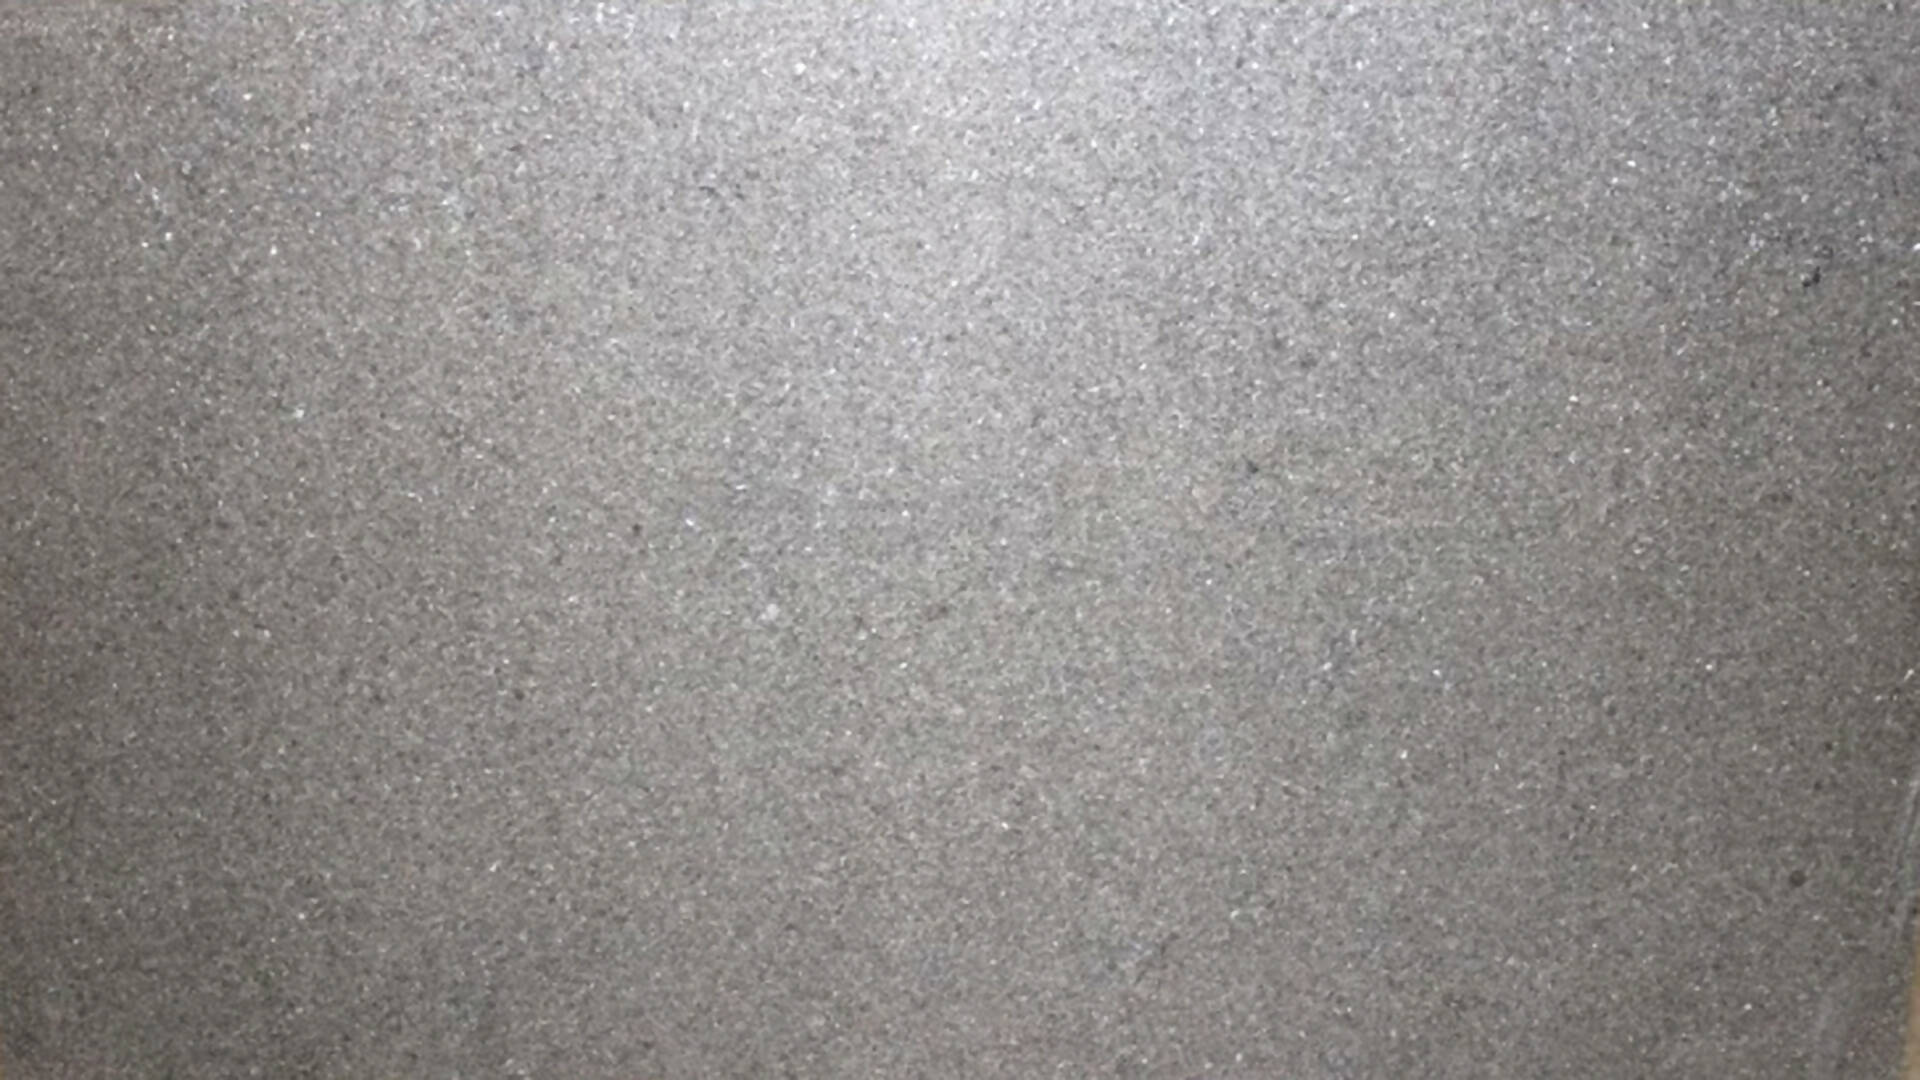 INDIA BLACK PEARL GRANITE,Granite,KSG UK LTD,www.work-tops.com